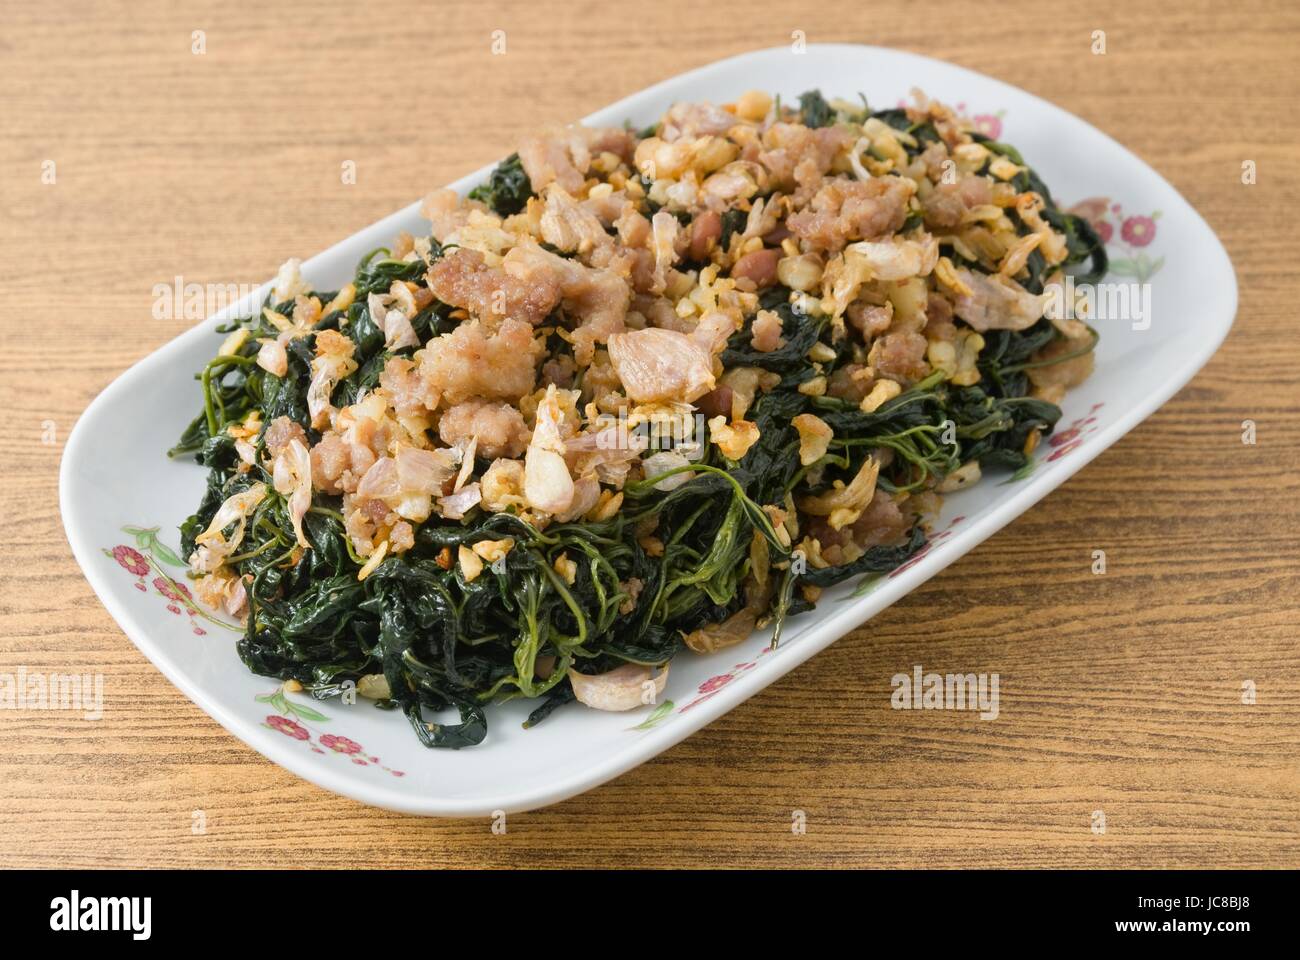 Cinese tradizionale cibo, una piastra di mescolare fritto di foglie di iuta o Mulukhiyah foglie con carne macinata di maiale, Garlics e fermentati di soia. Foto Stock